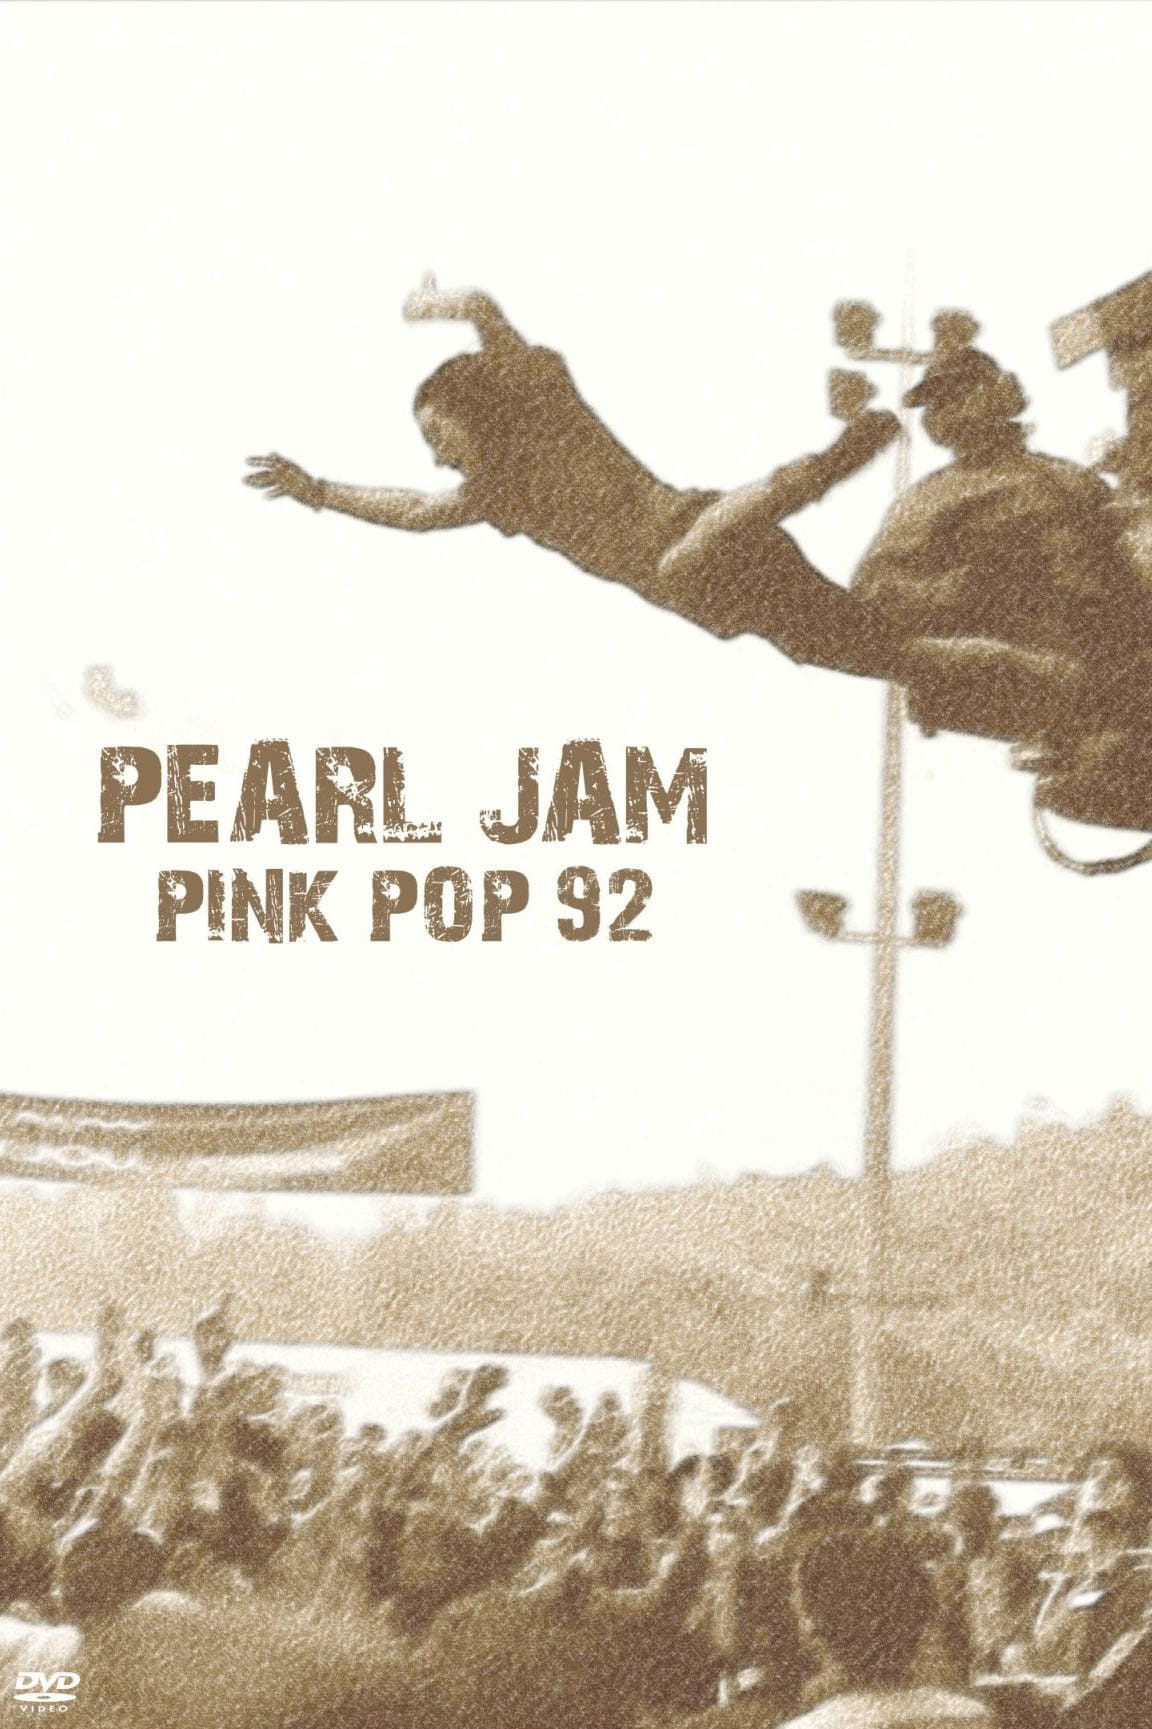 Pearl Jam: Live at Pinkpop '92